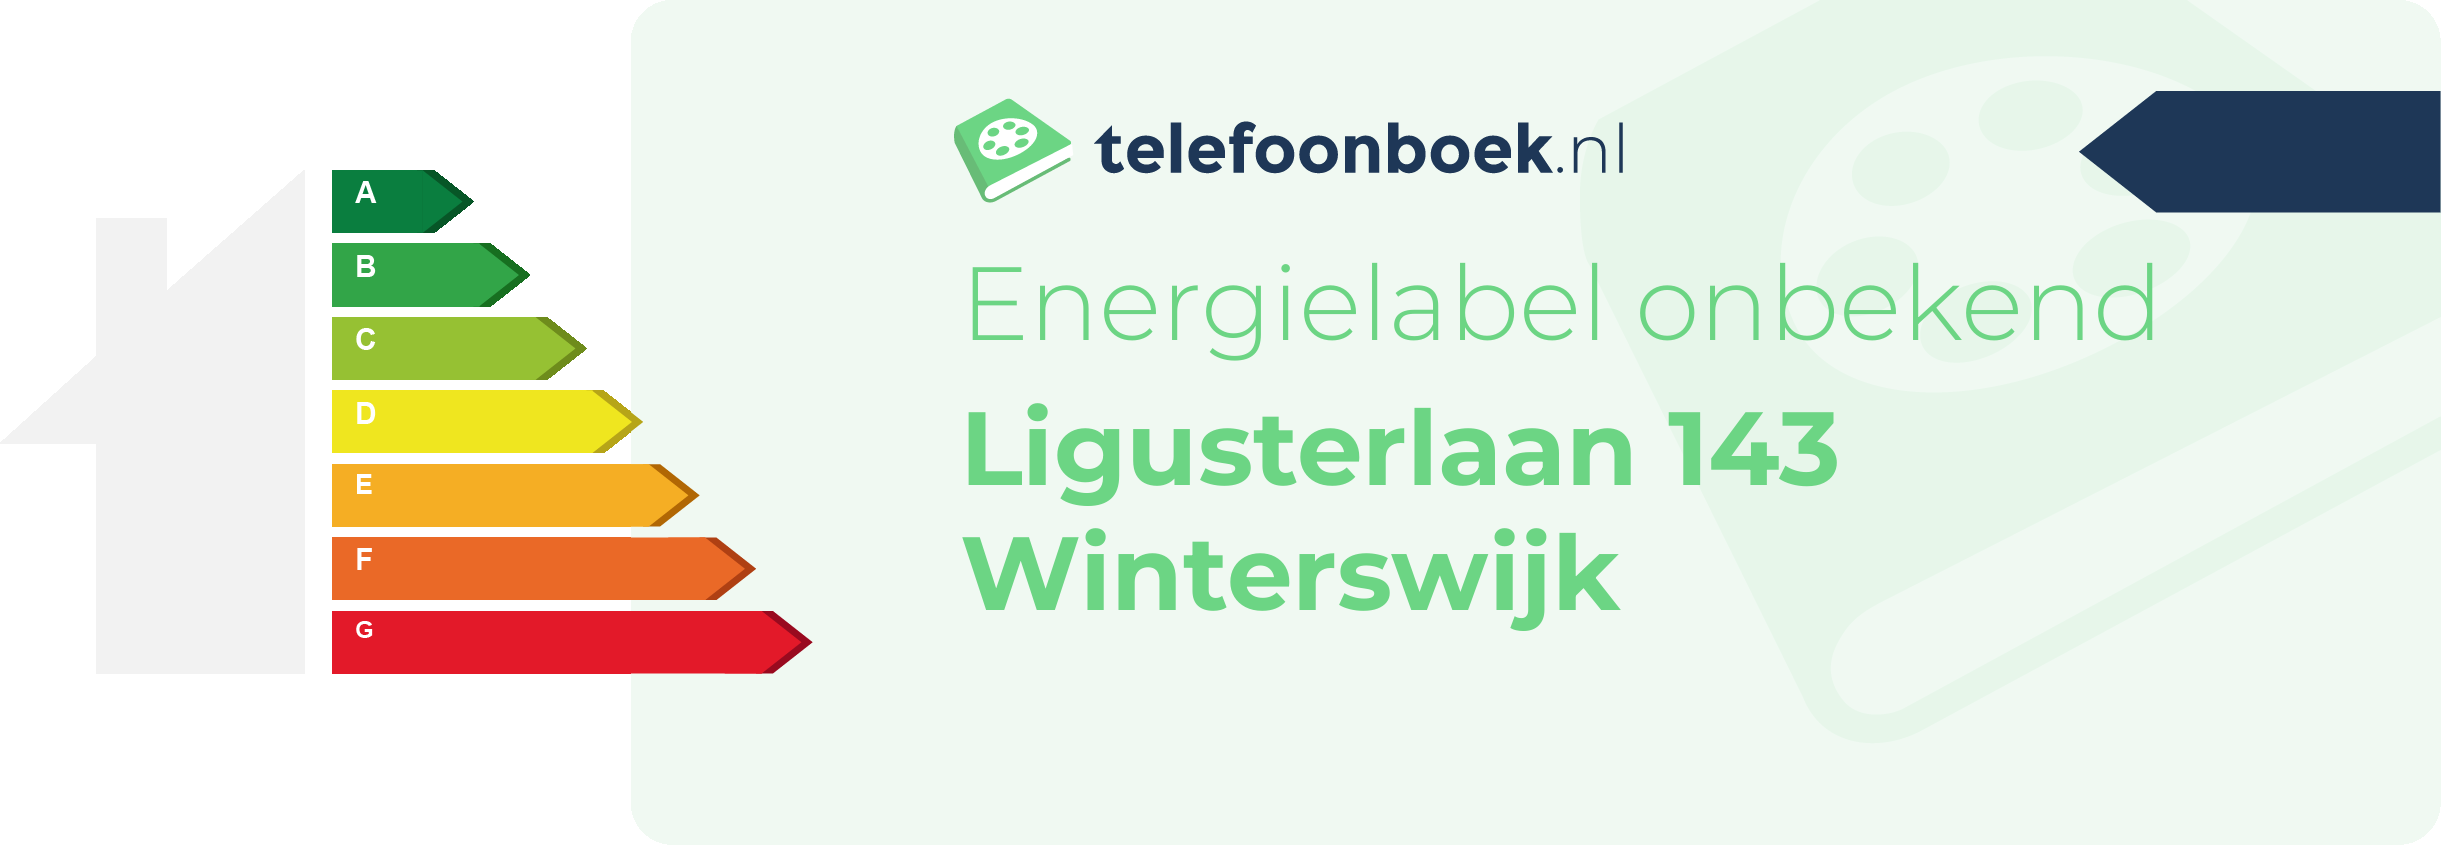 Energielabel Ligusterlaan 143 Winterswijk